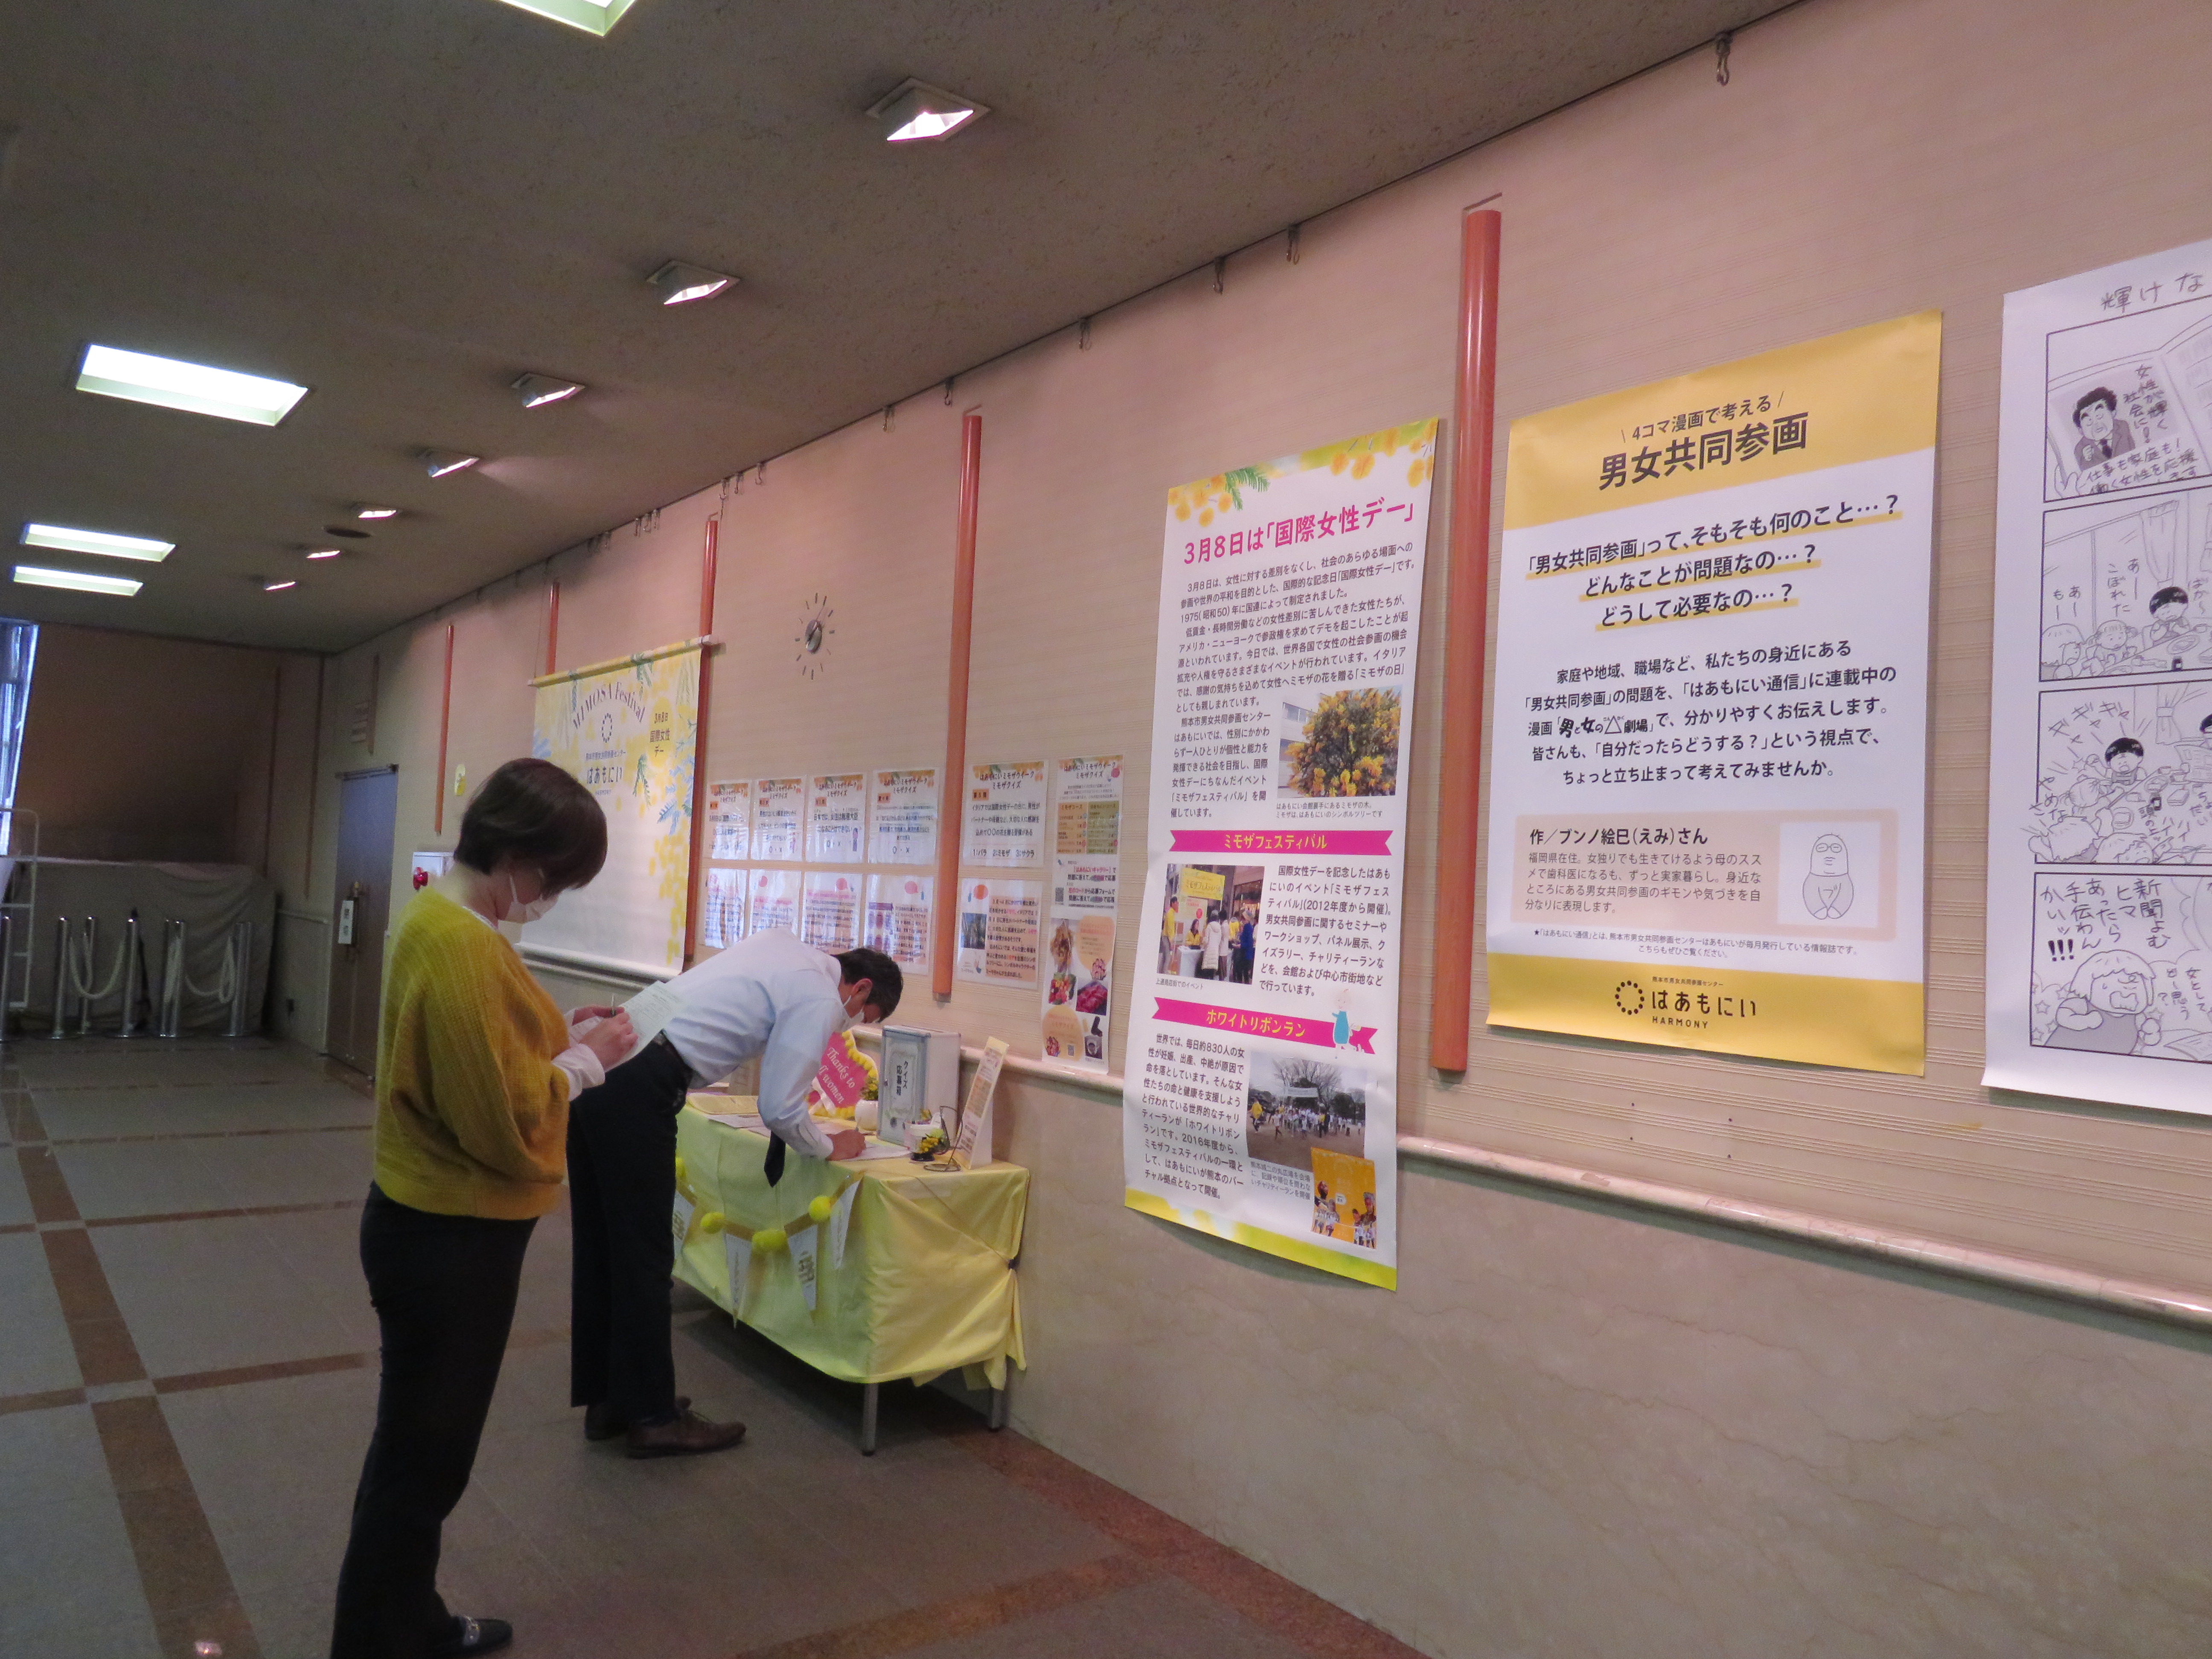 スタッフブログ - スタッフブログ | 熊本市男女共同参画センター はあもにい